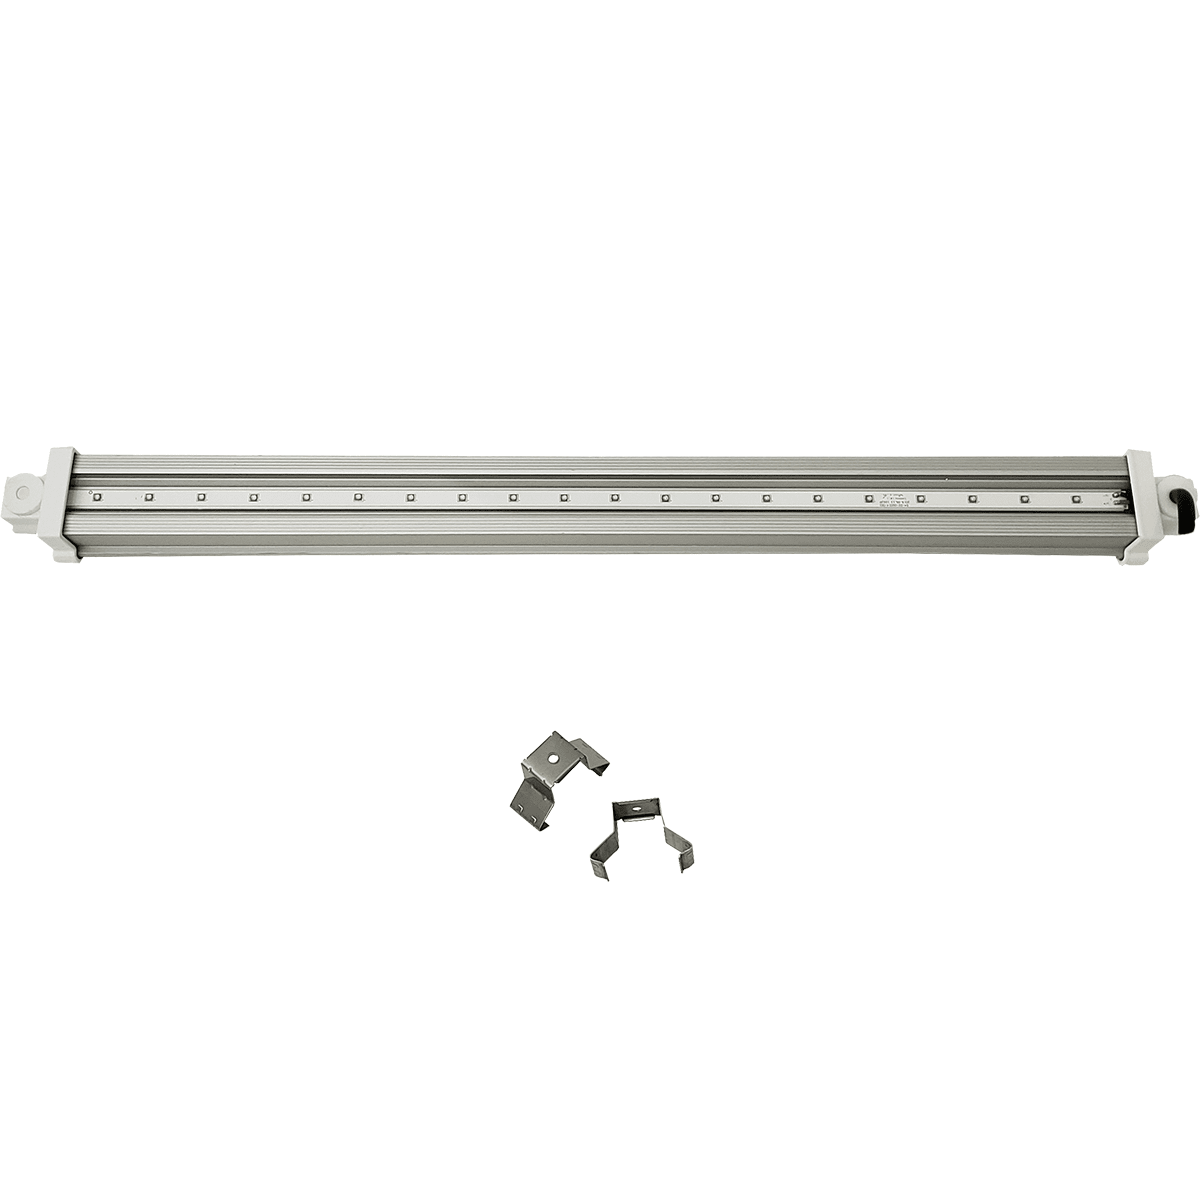 HLG 30 UVA Waterproof LED Supplement Bar (HLG-30-LAMP-UVA) - 120V